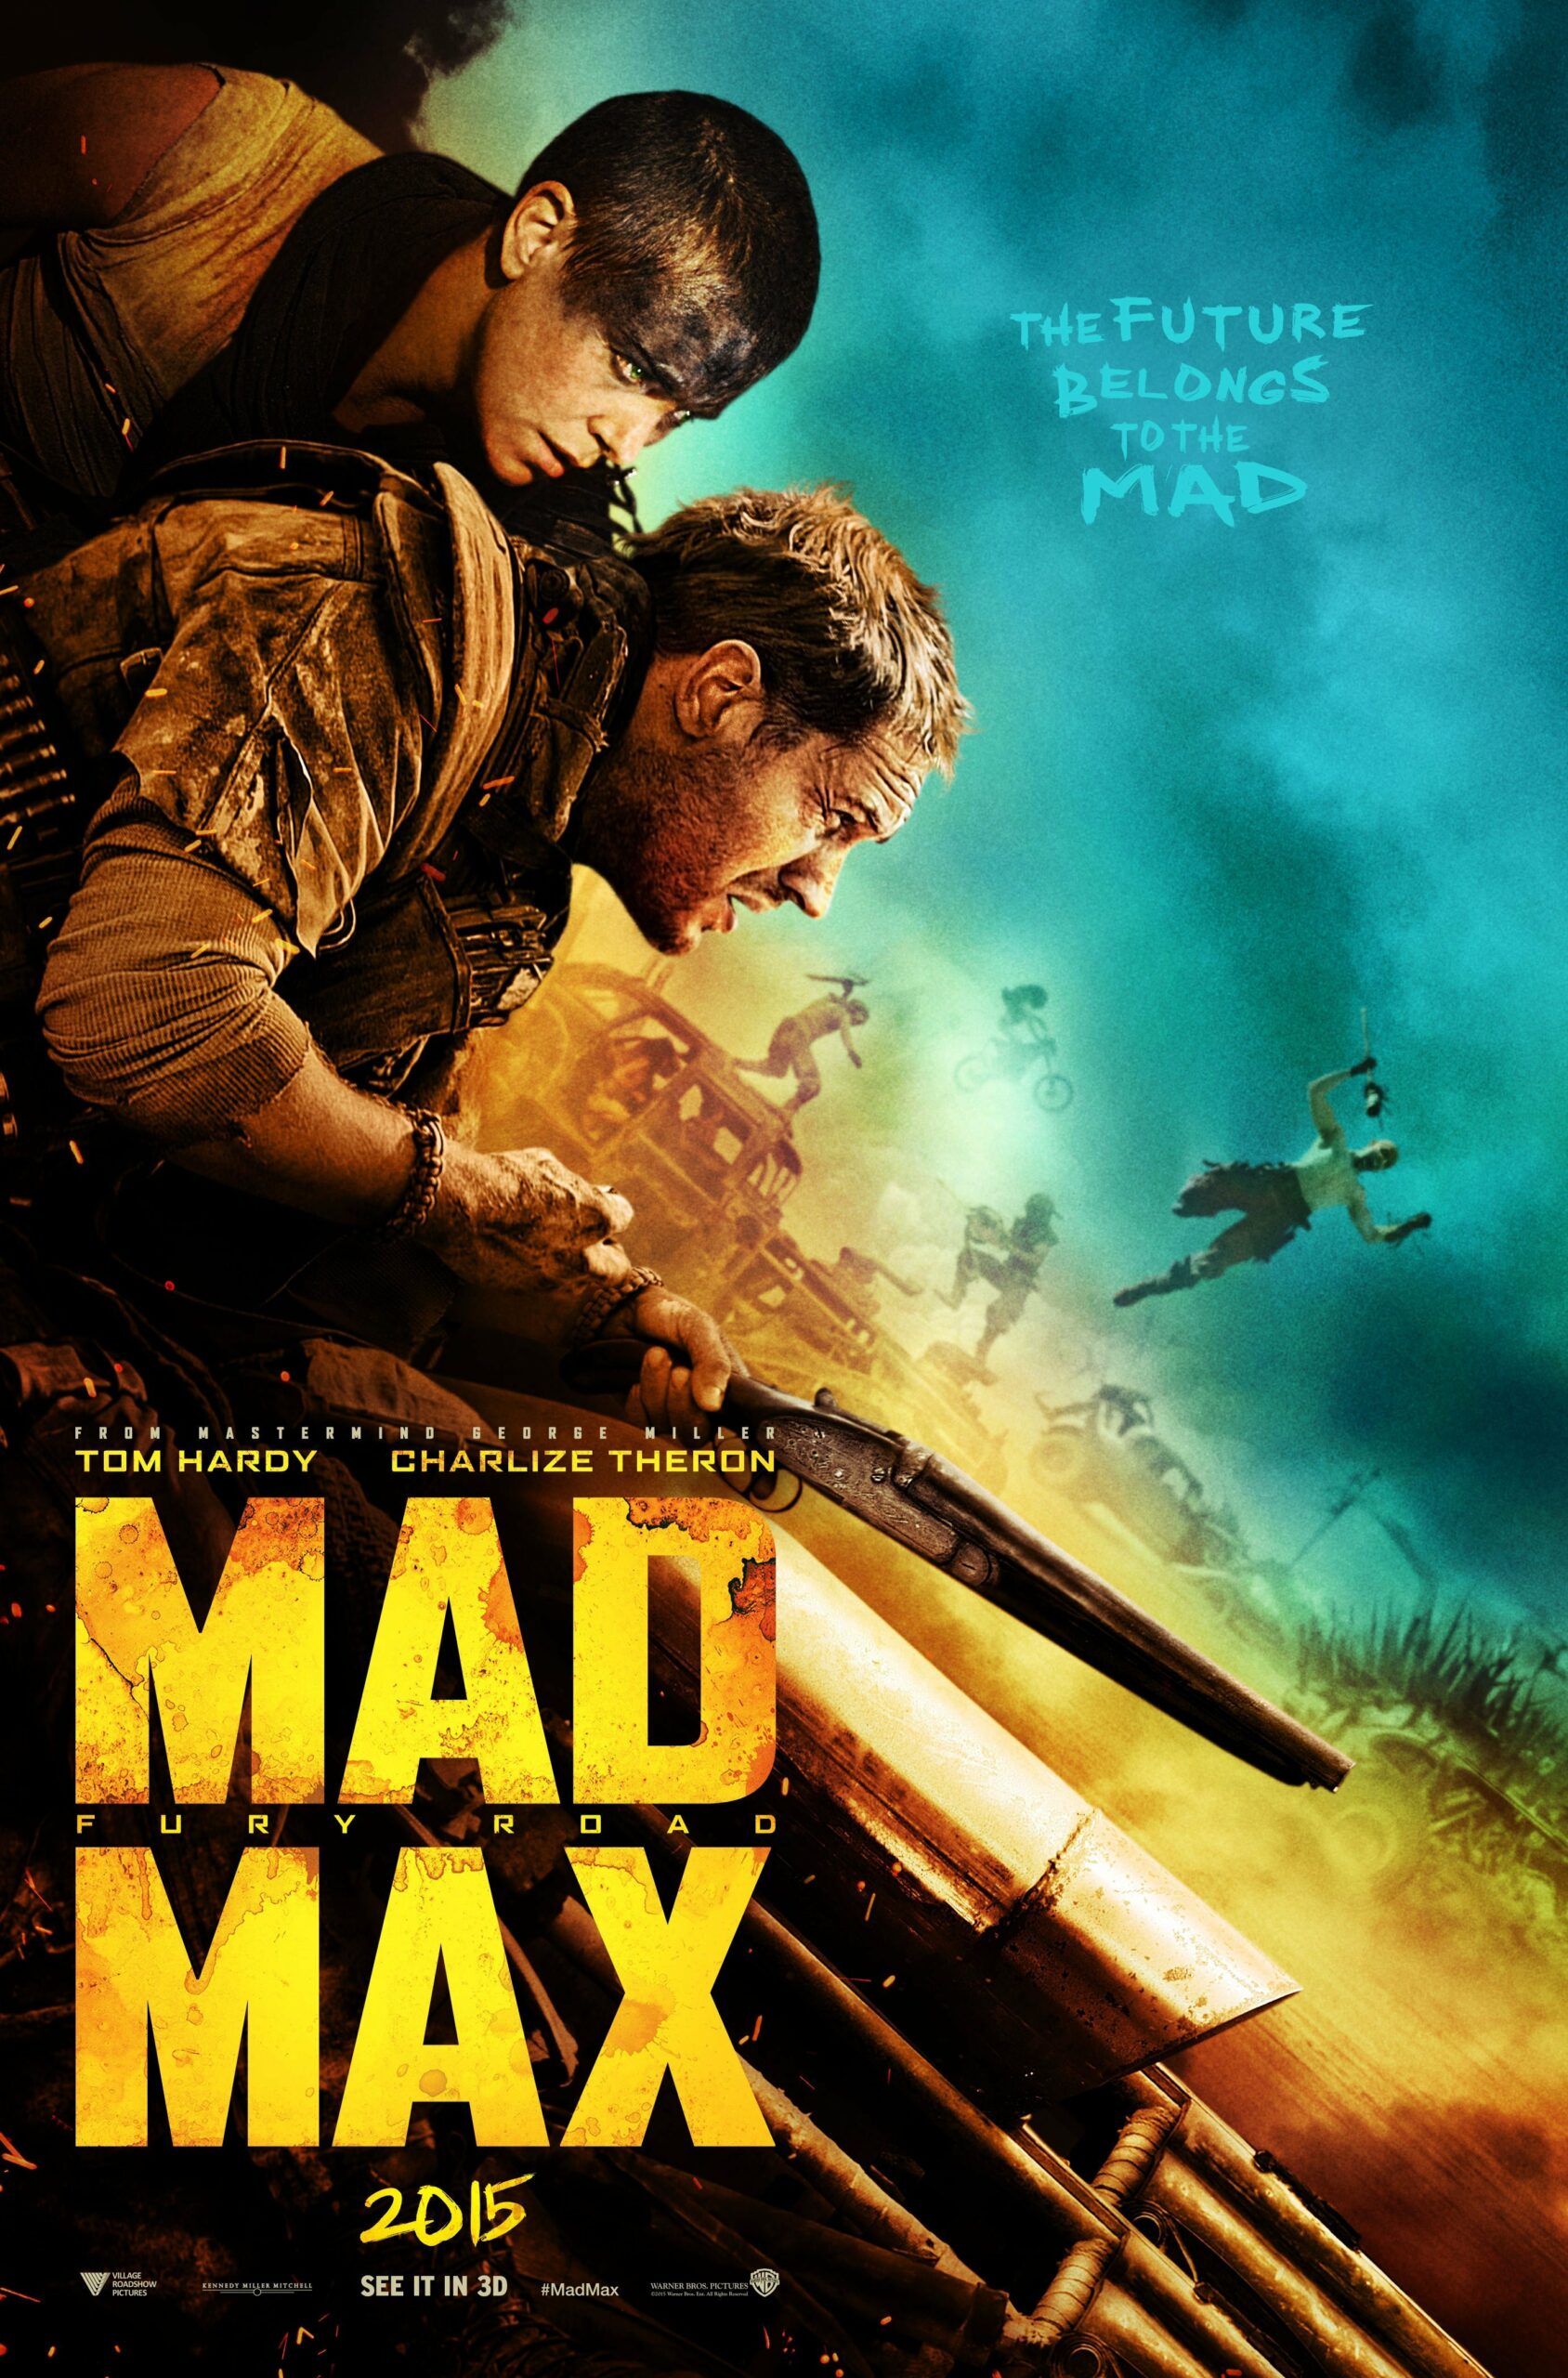 Poster du film Mad Max: Fury Road réalisé par George Miller, d’après un scénario de Nick Lathouris, Brendan McCarthy et George Miller, avec Tom Hardy, Charlize Theron.